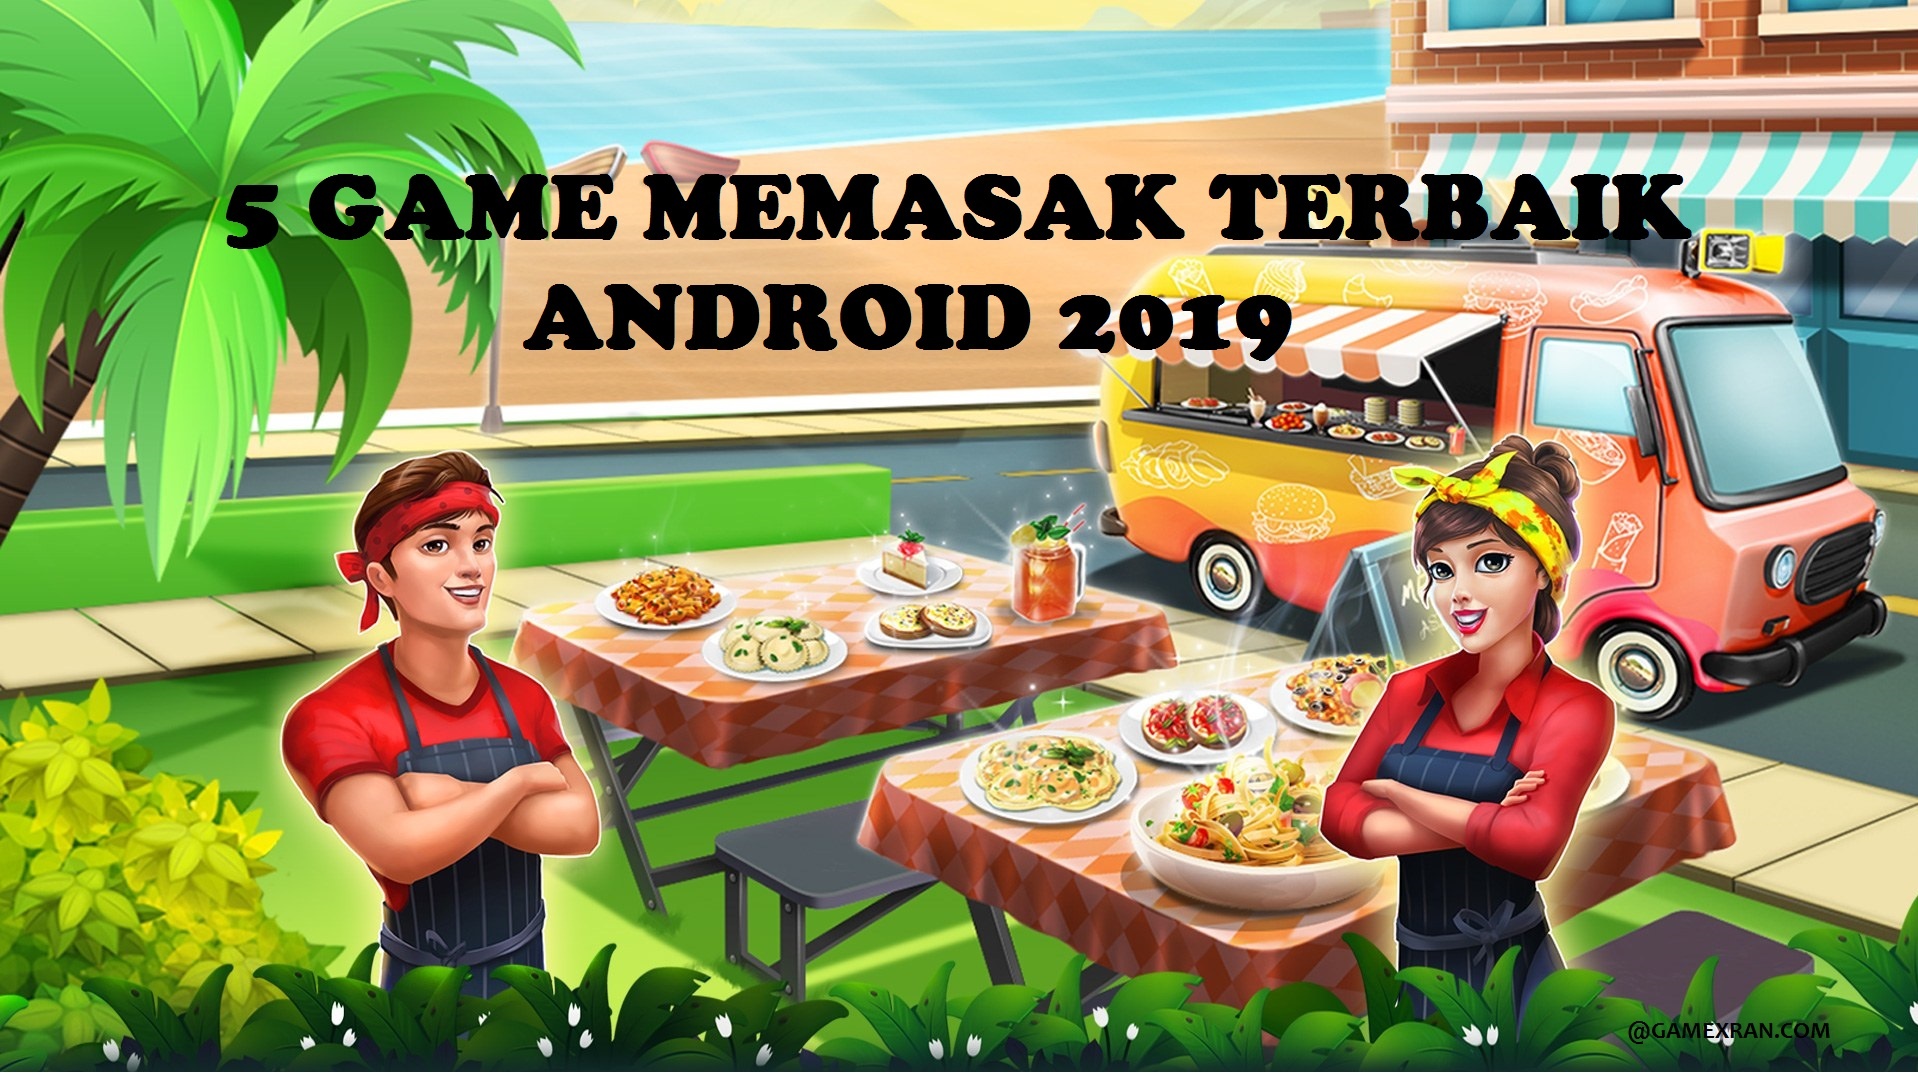 5 Game Memasak Terbaik Android 2019